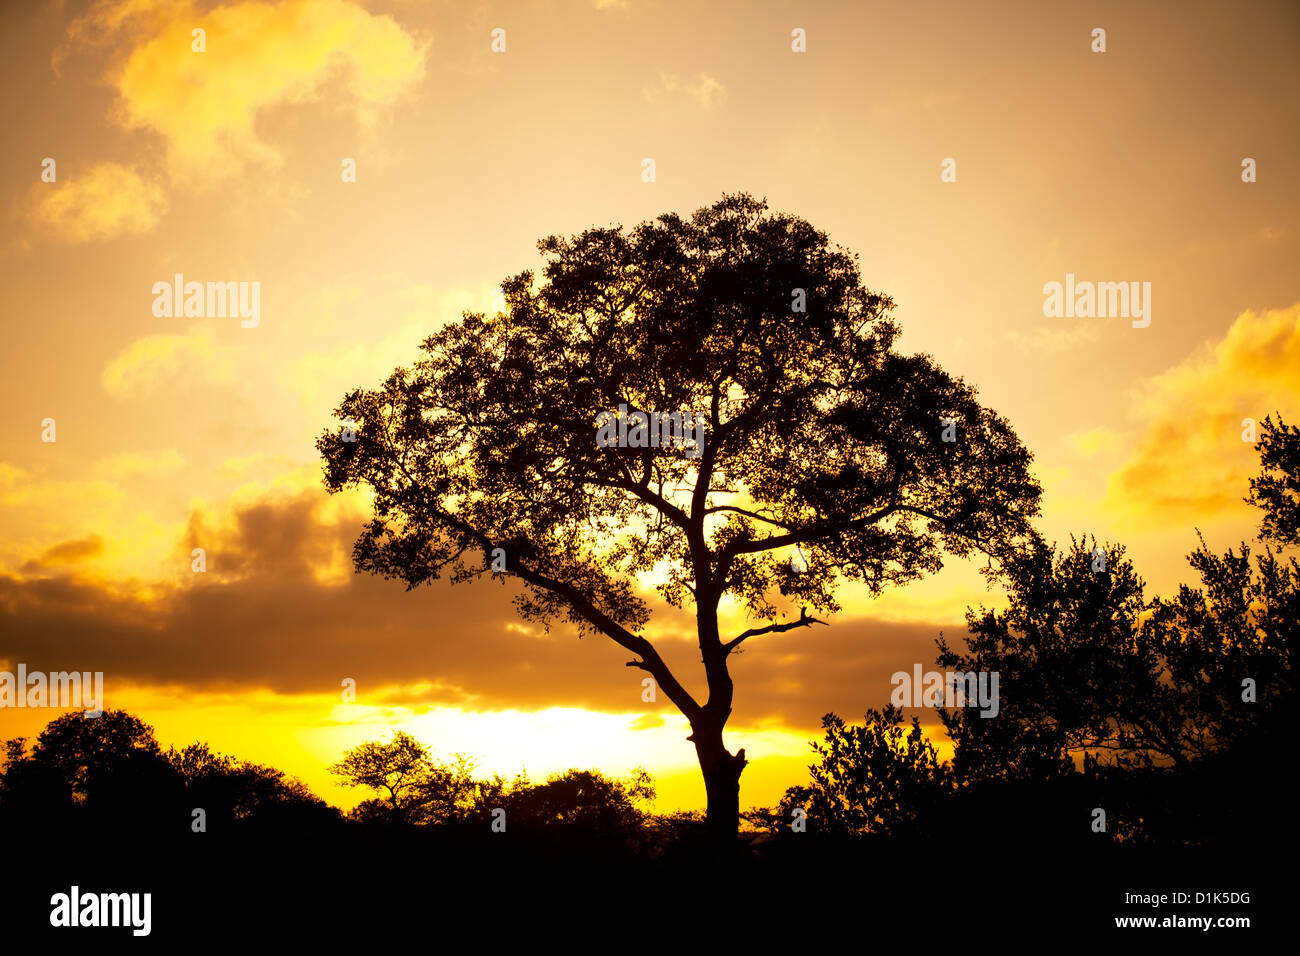 Afrikanischen Baum Silhouette gegen einen goldenen Sonnenaufgang oder Sonnenuntergang im afrikanischen Busch auf safari Stockfoto